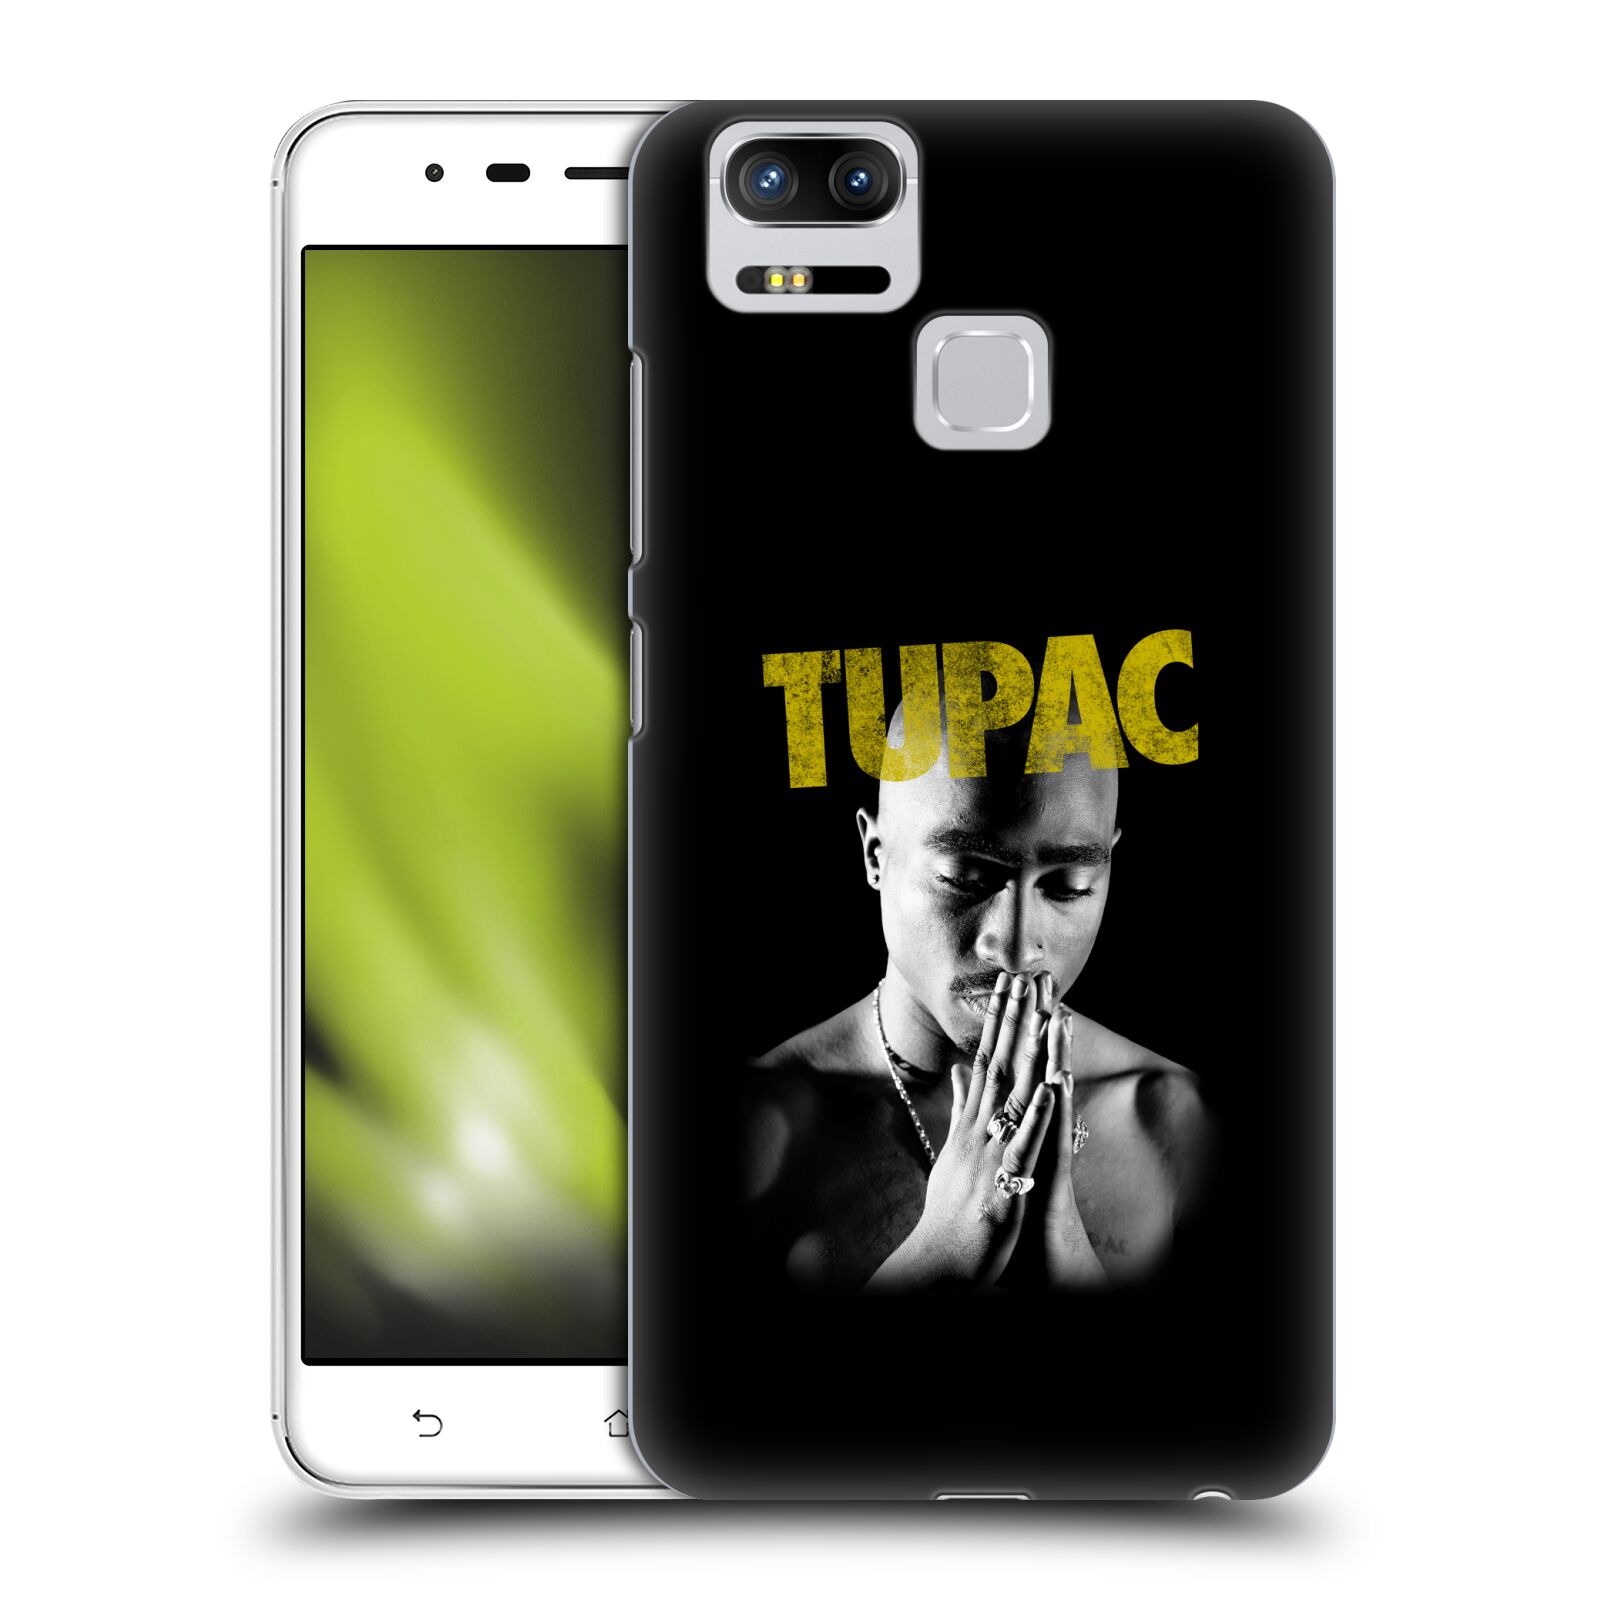 HEAD CASE plastový obal na mobil Asus Zenfone 3 Zoom ZE553KL Zpěvák rapper Tupac Shakur 2Pac zlatý nadpis